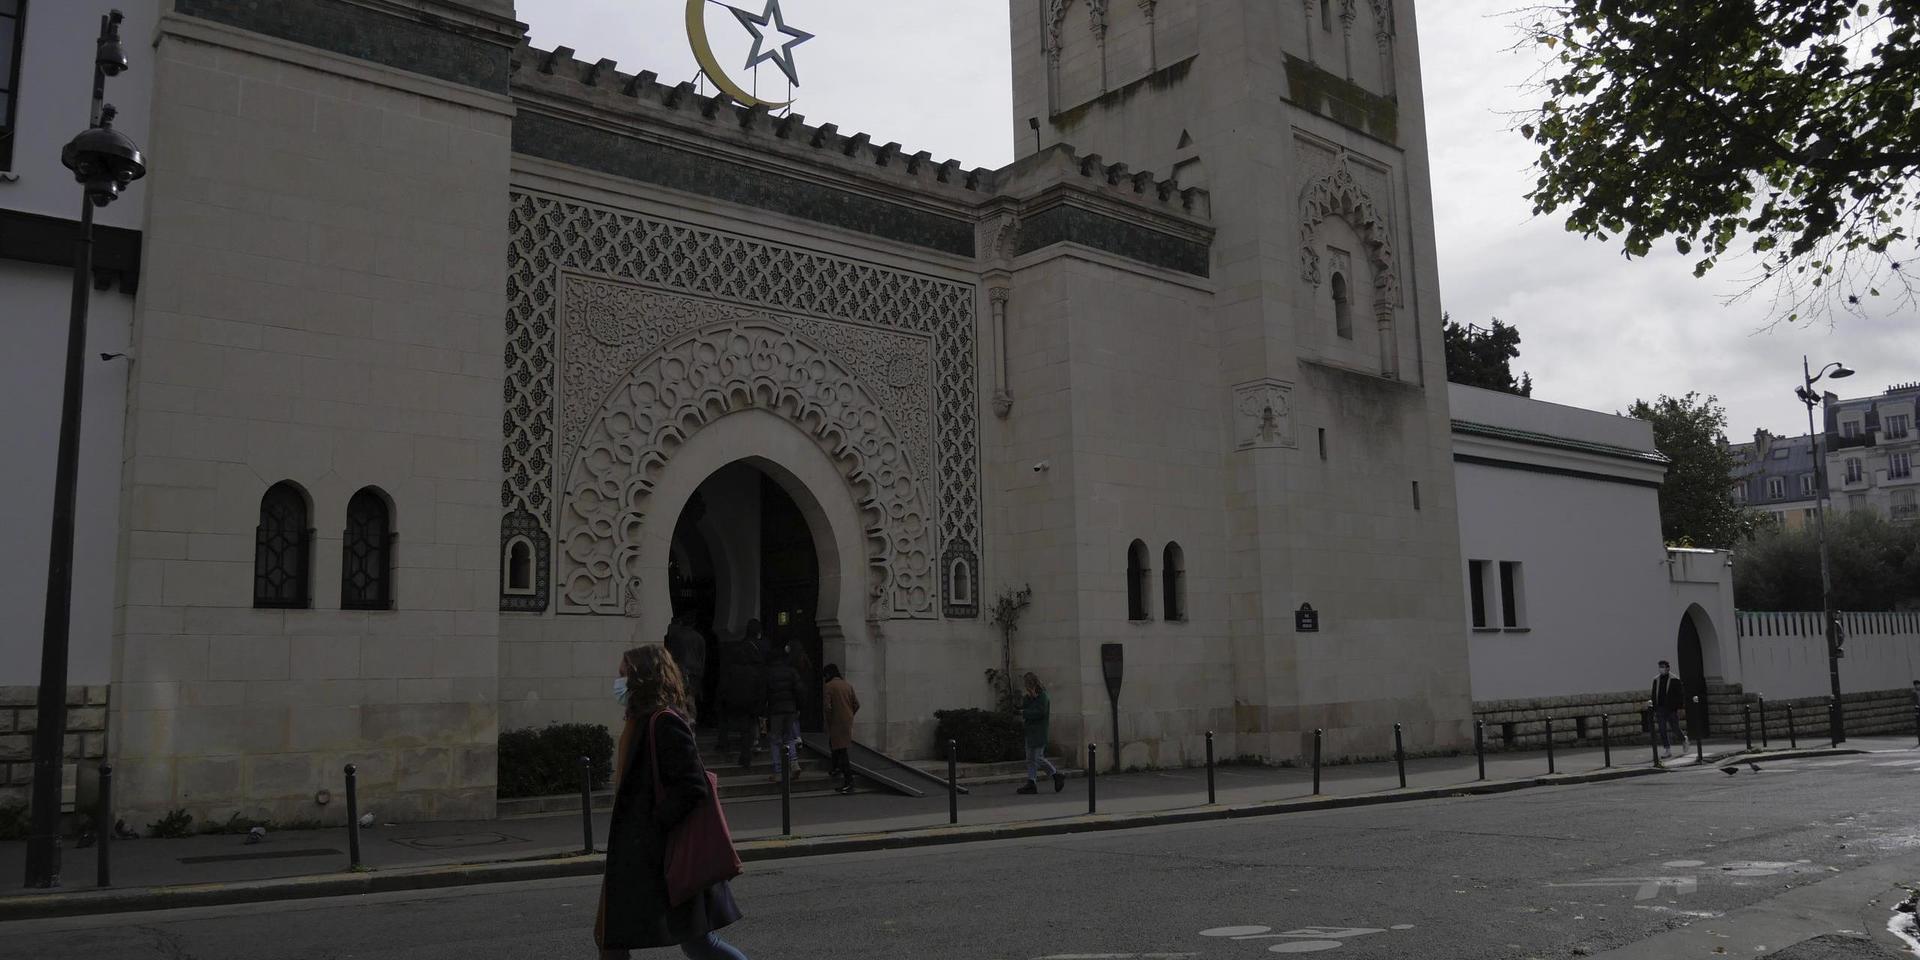 Frankrikes muslimer är på väg att få en gemensam stadga med grundläggande värderingar. Arkivbild på en moské i Paris.